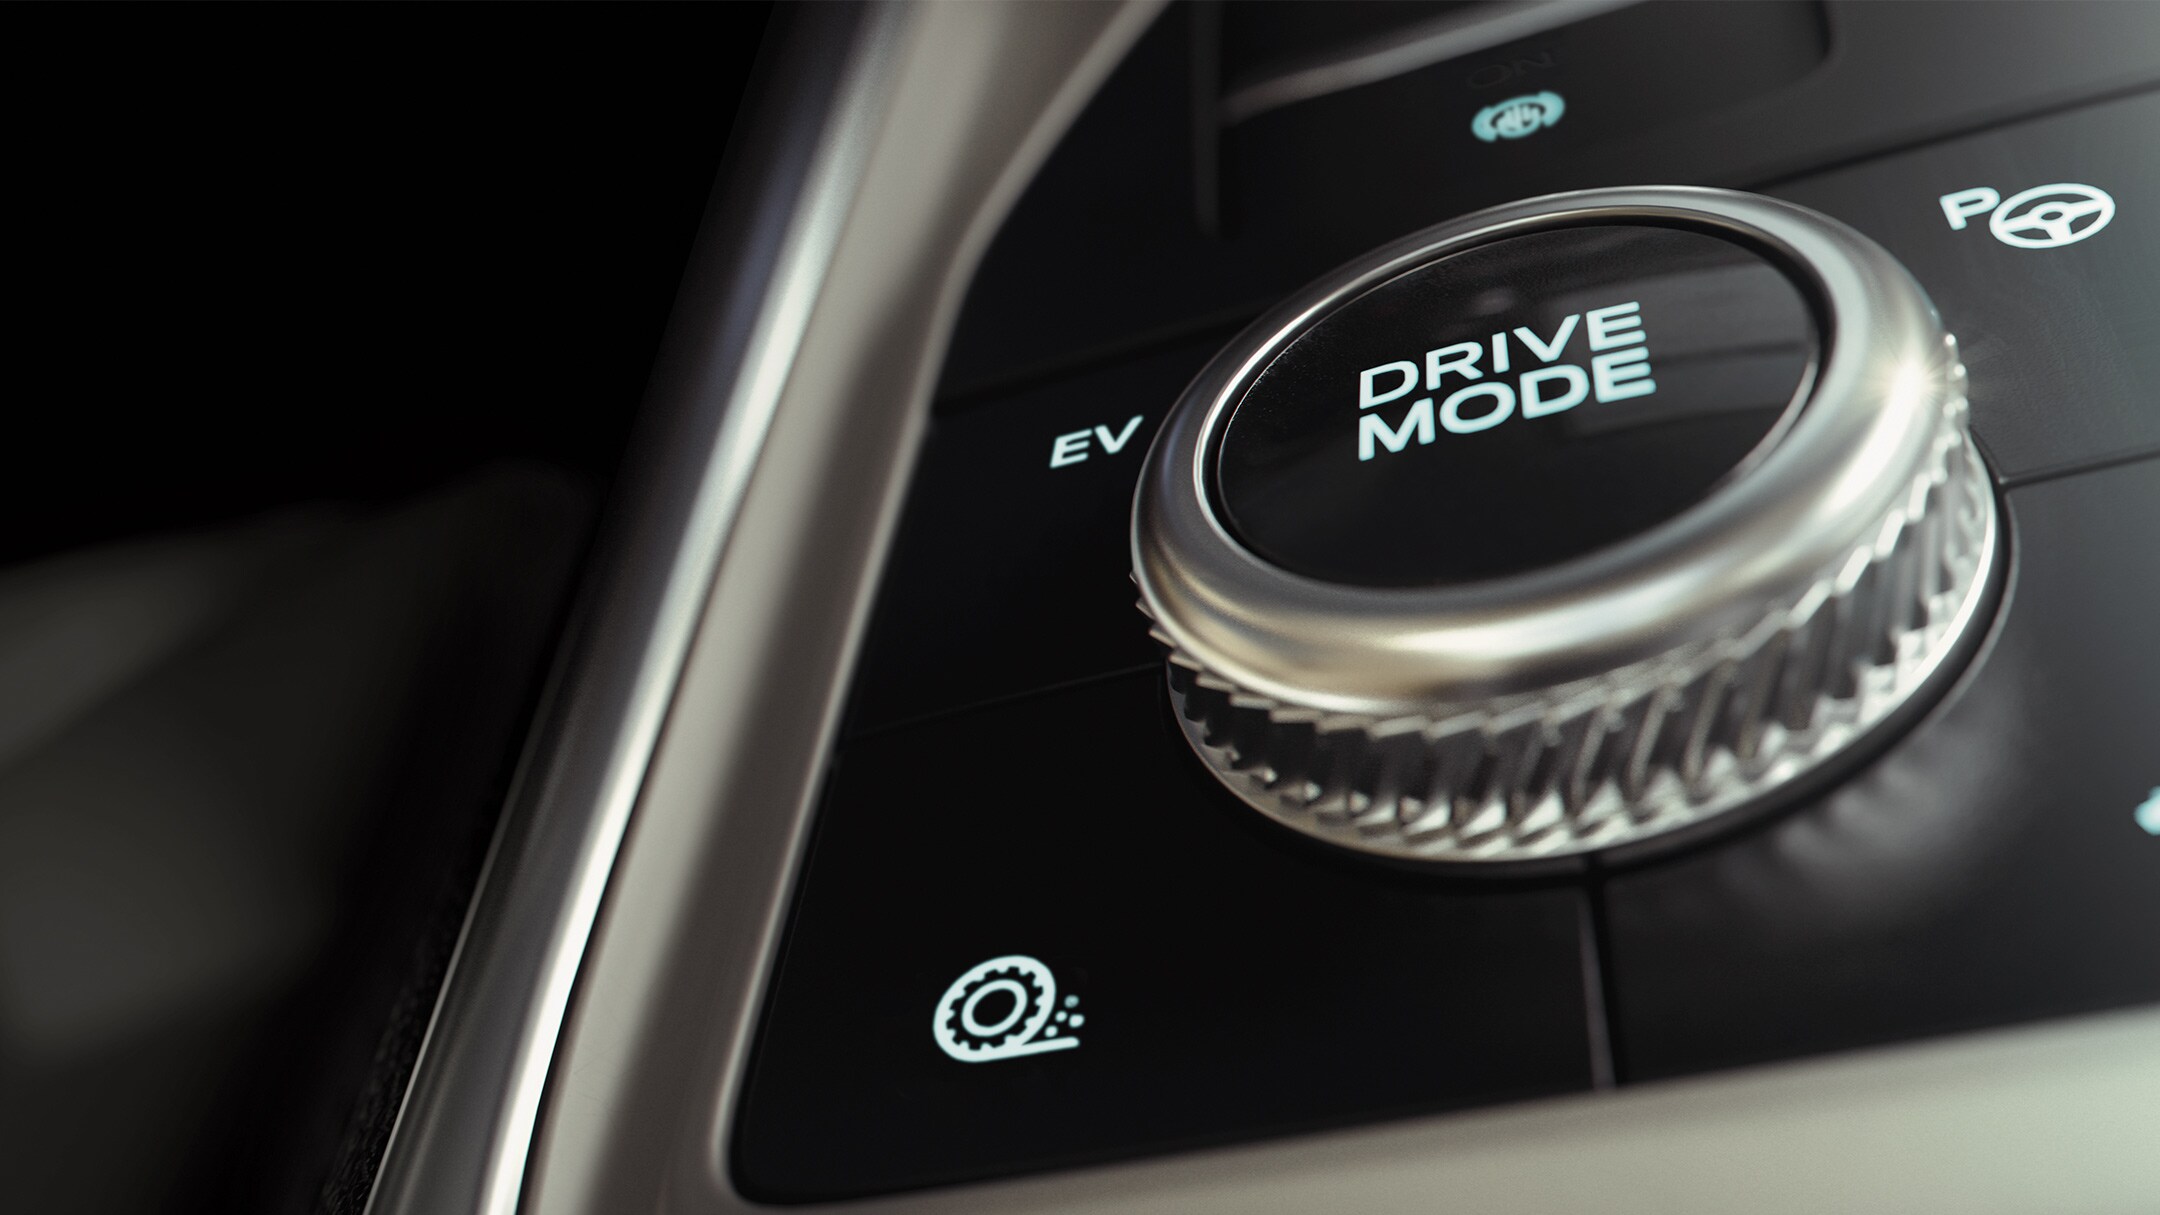 Ford Explorer nærbillede af drive mode knap